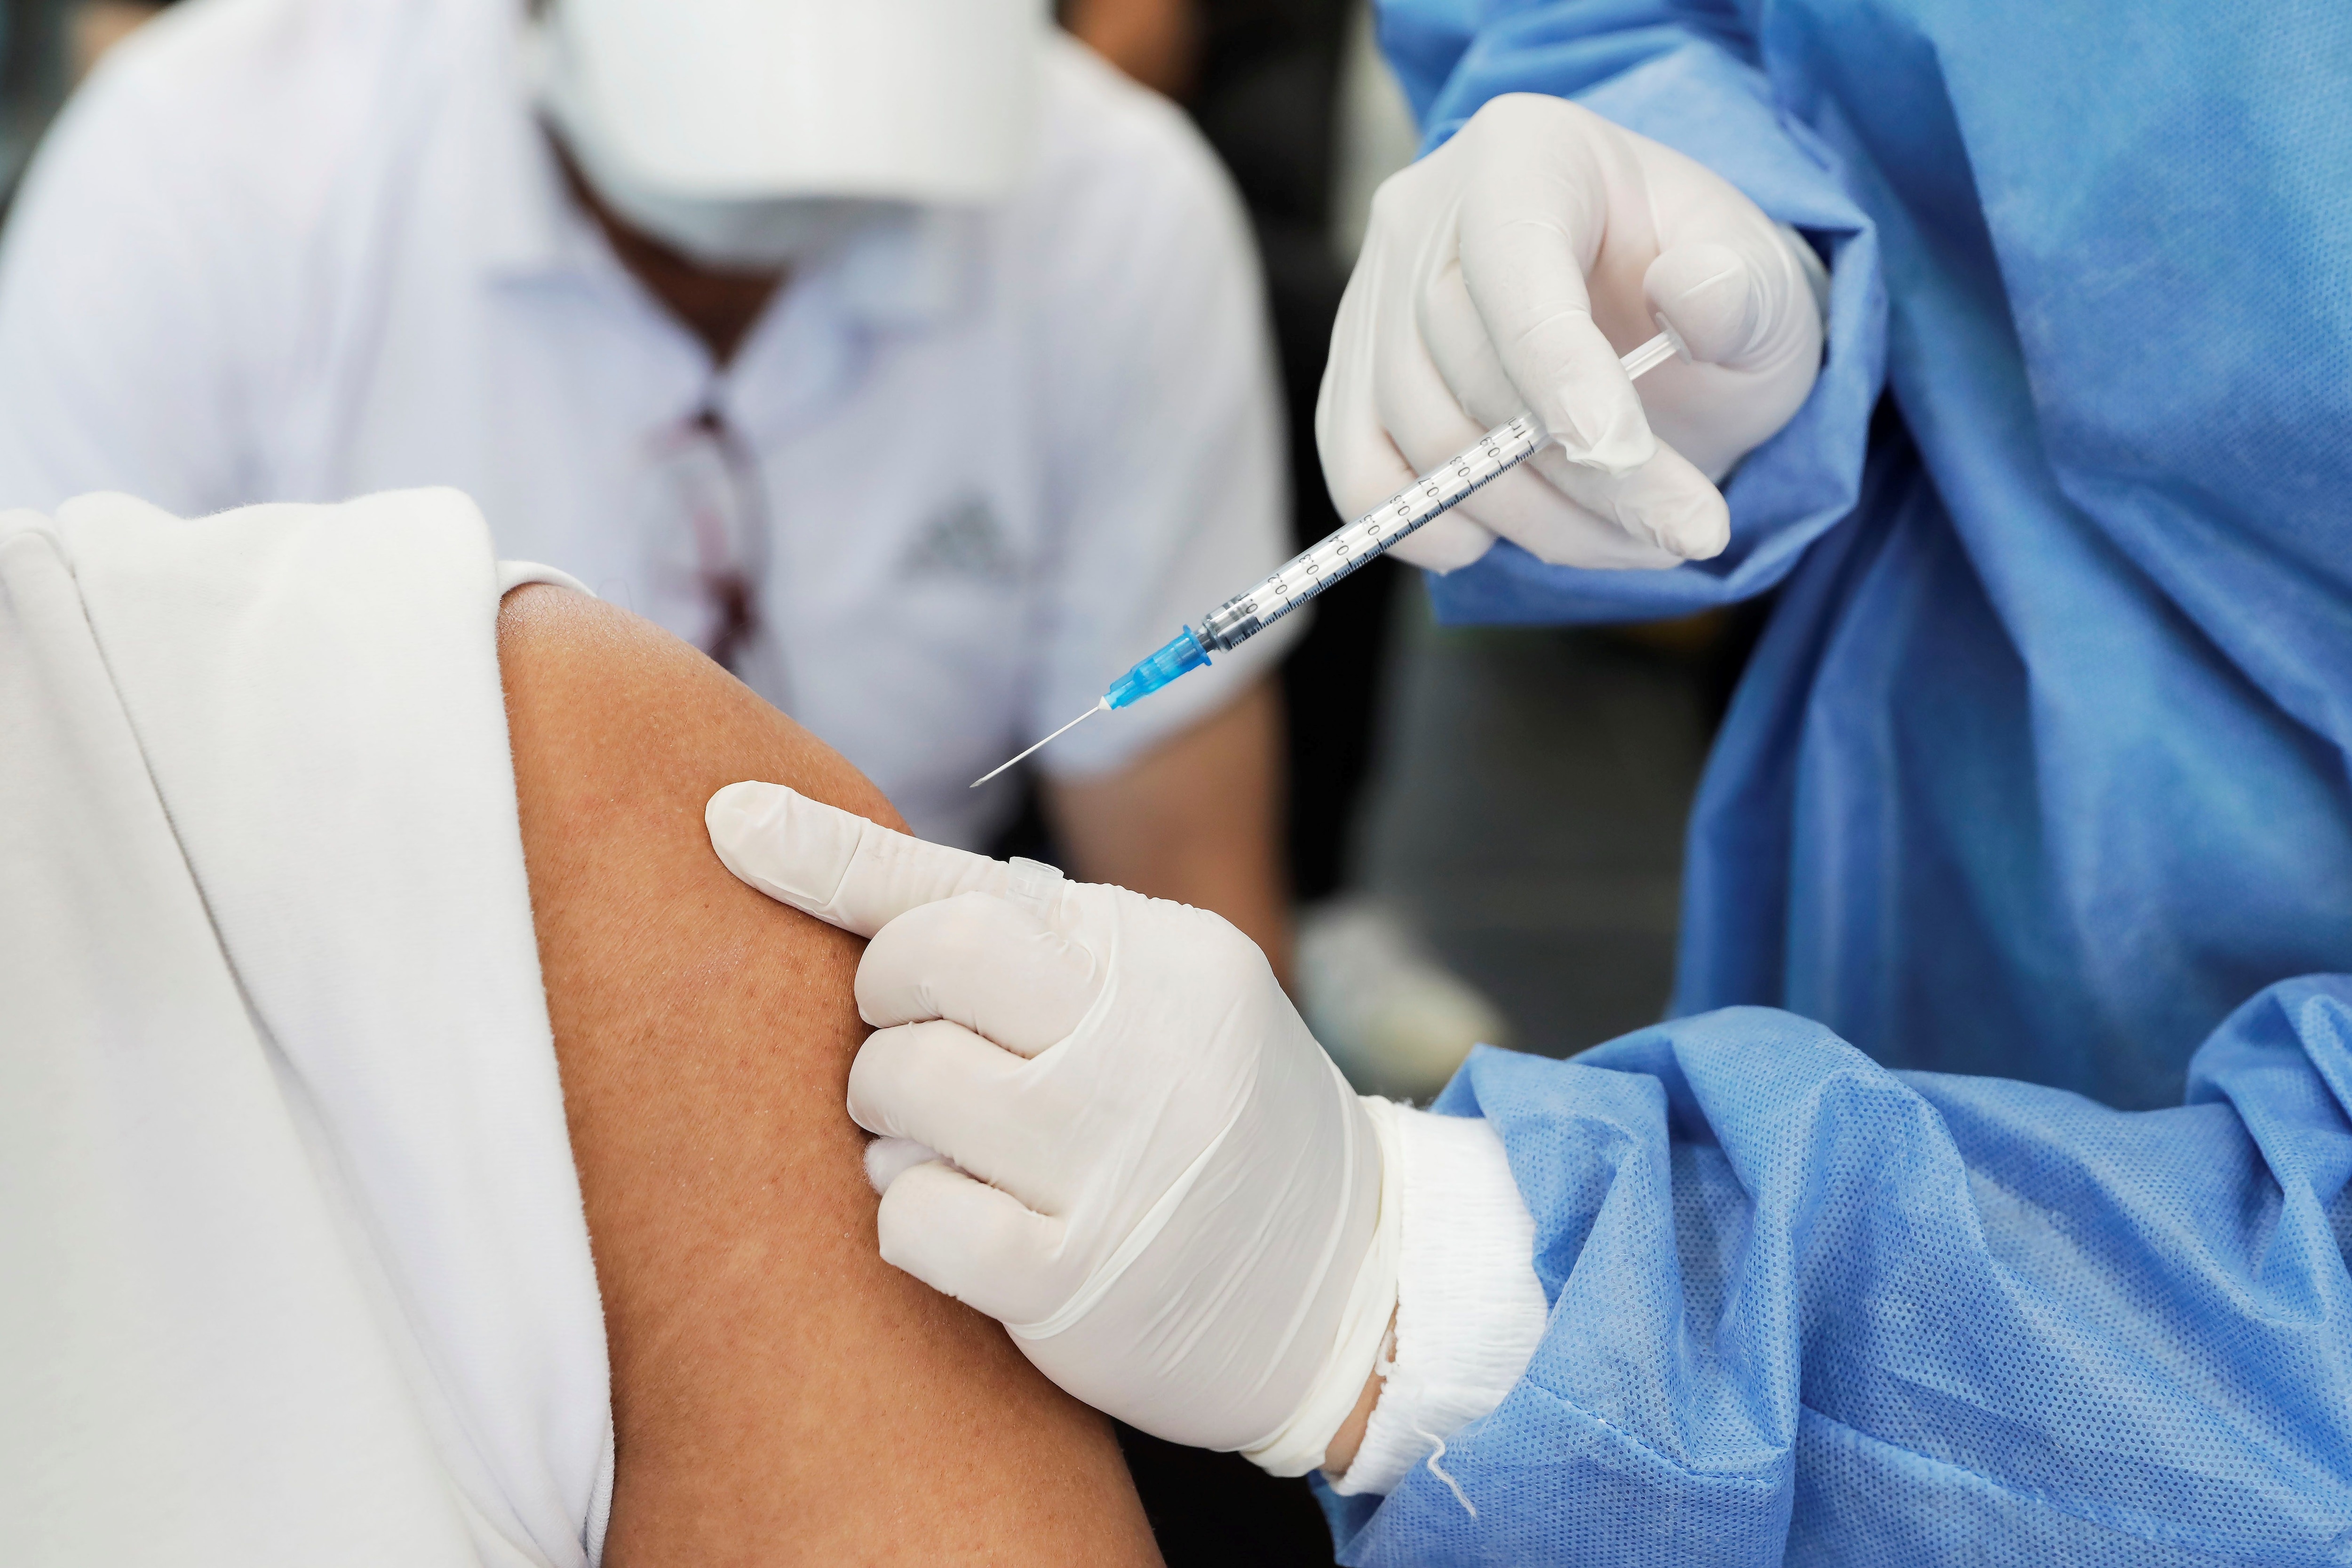 Una enfermera pone una vacuna, en una imagen de archivo. EFE/ Carlos Ortega 